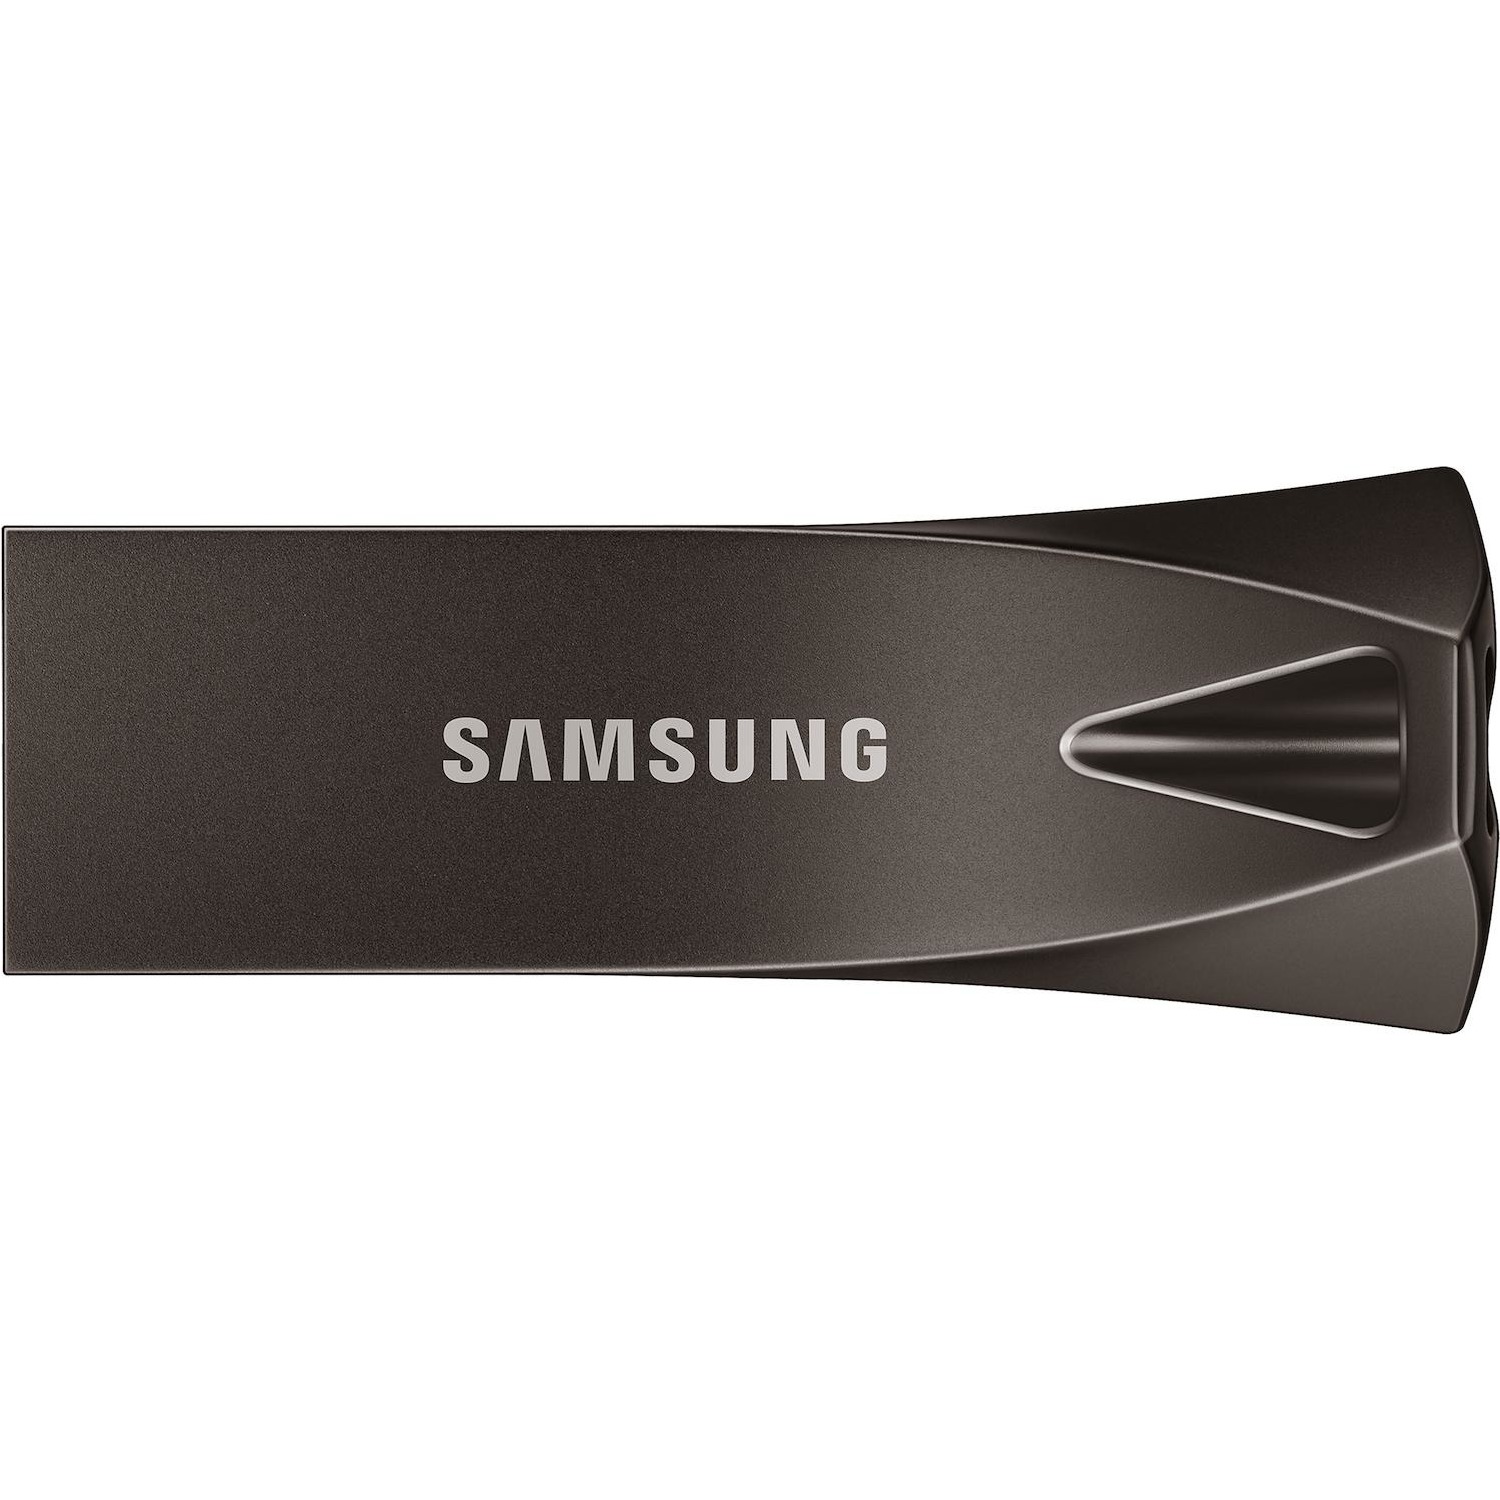 Immagine per Pen drive Samsung 128GB USB 3.1 grafite da DIMOStore